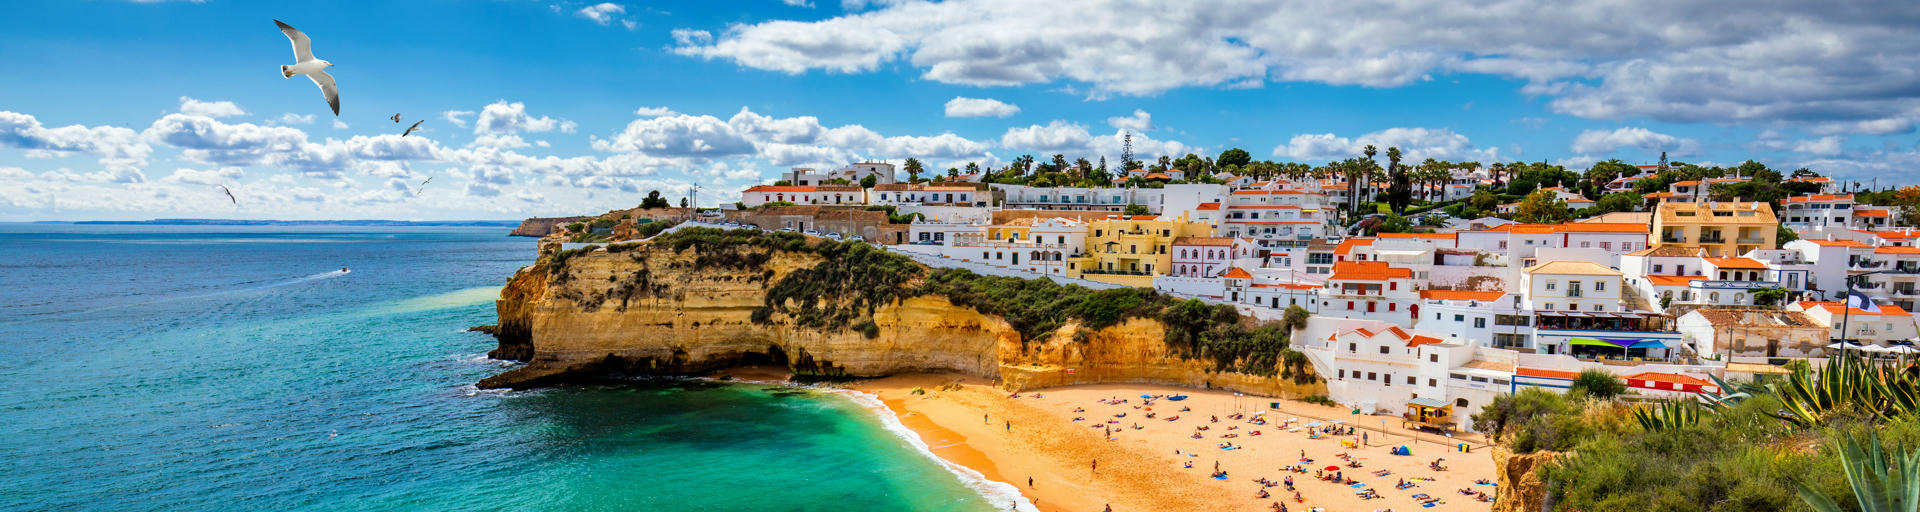 Eine wunderbare Bucht beim Wohnmobilurlaub in Portugal